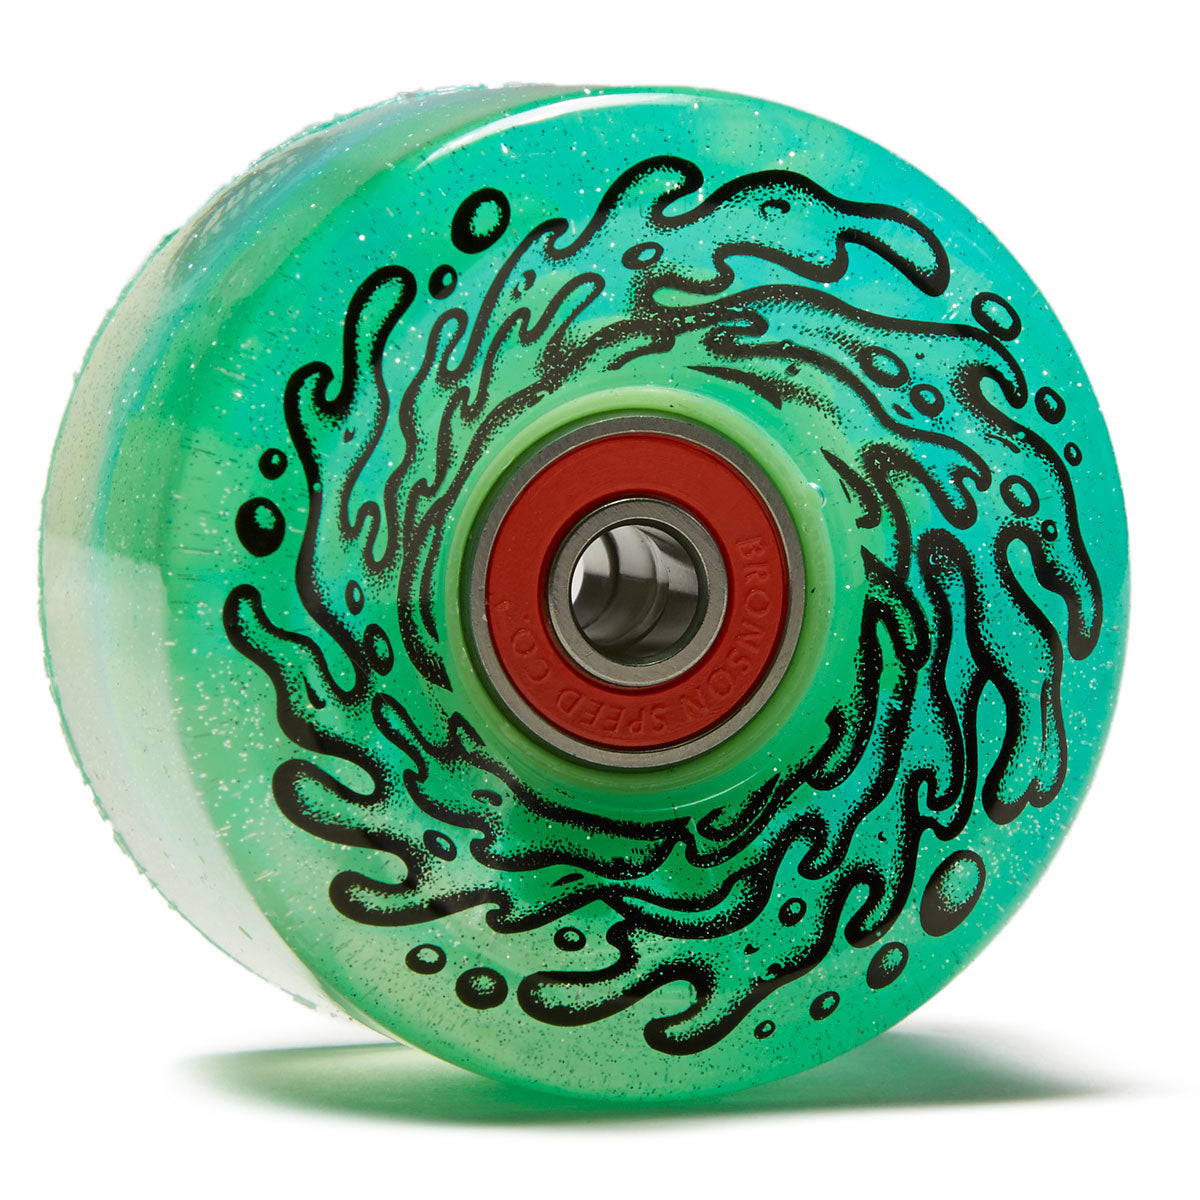 Slime Balls Light Ups OG Slime 78a Skateboard Wheels - Blue/Green Glitter - 60mm image 1